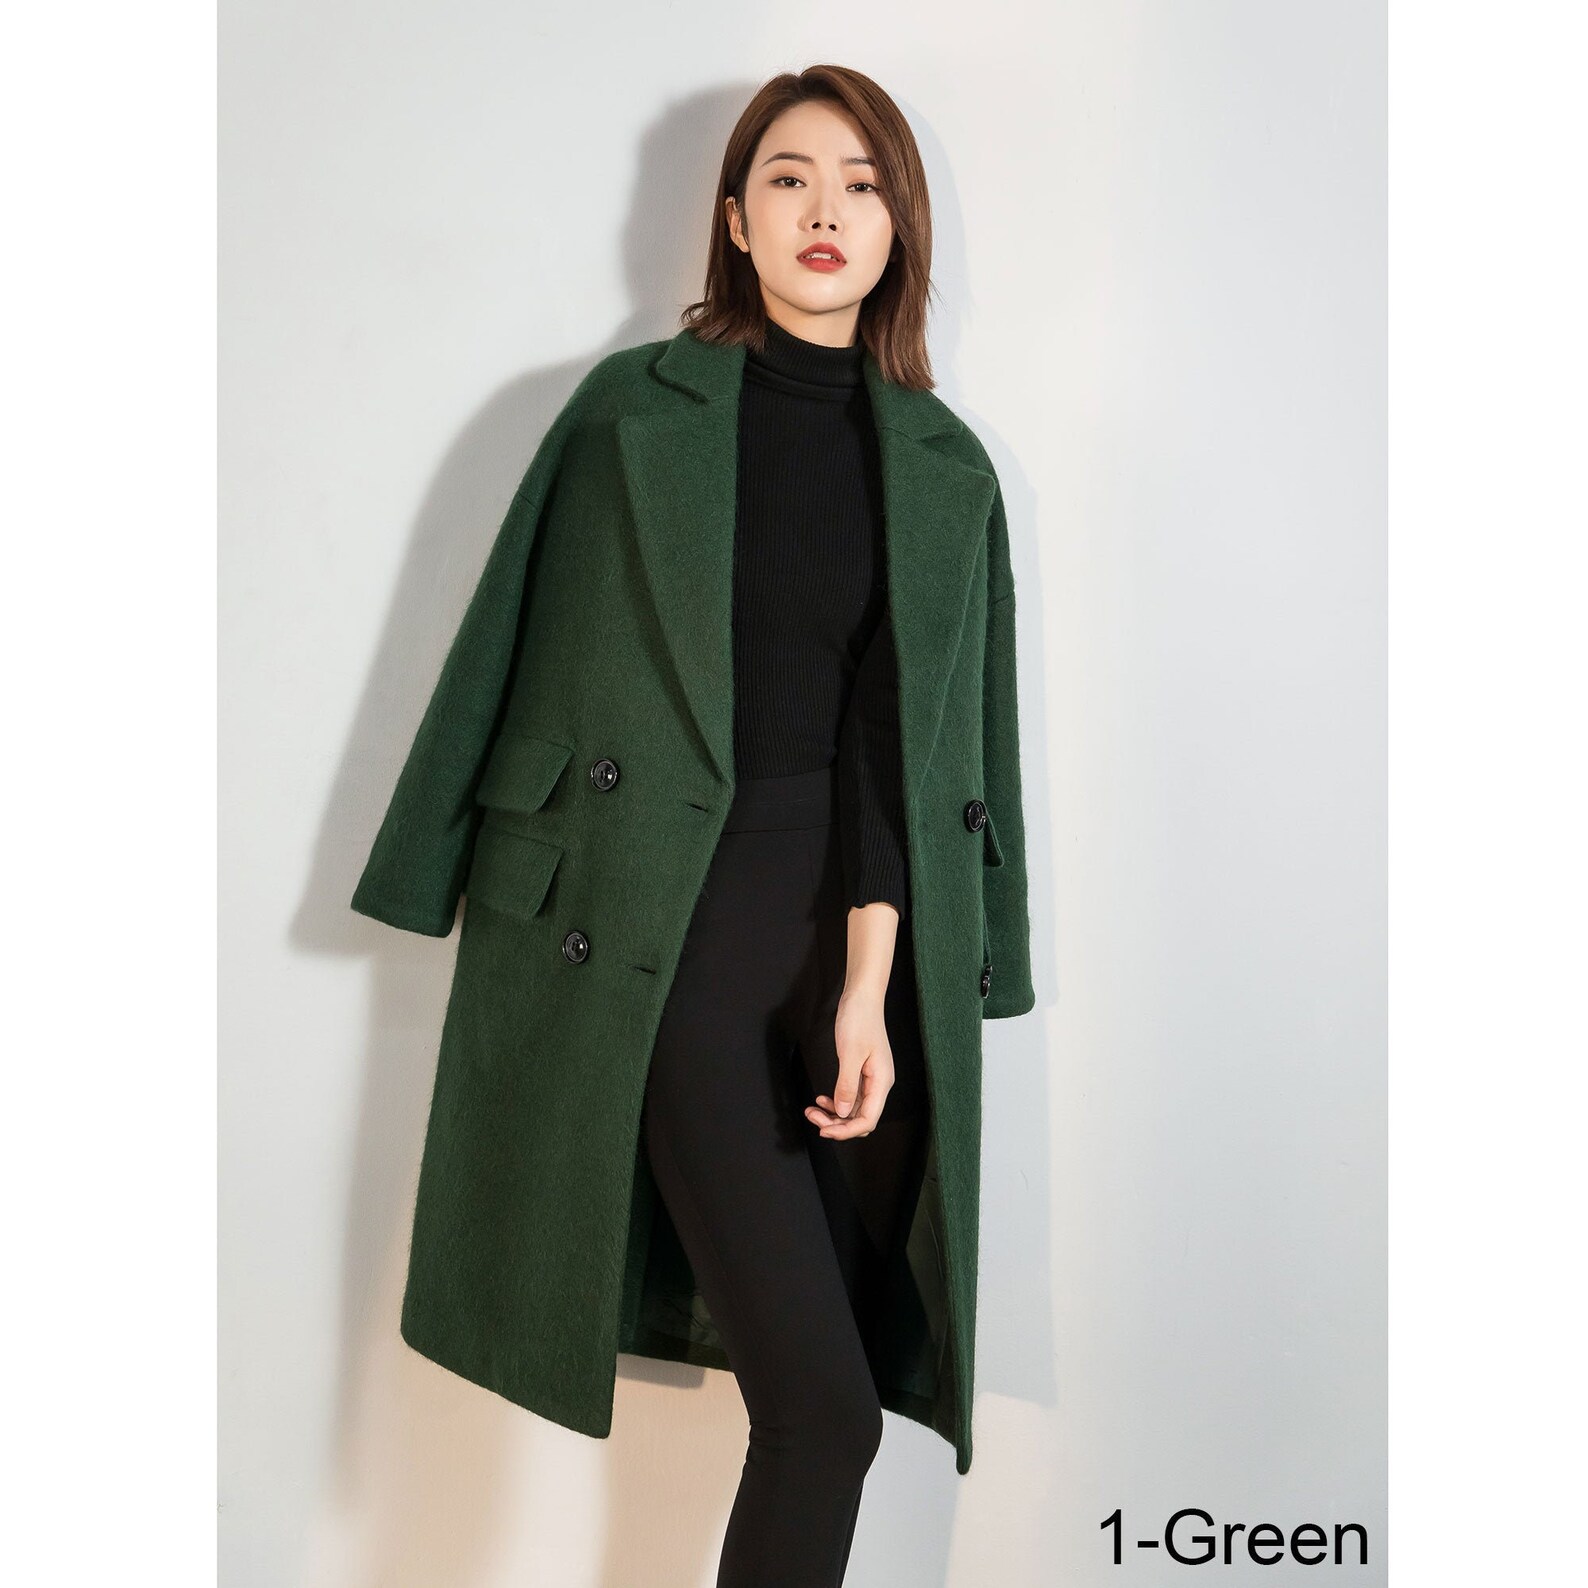 Green Long wool coat women Oversized wool coat warm winter | Etsy